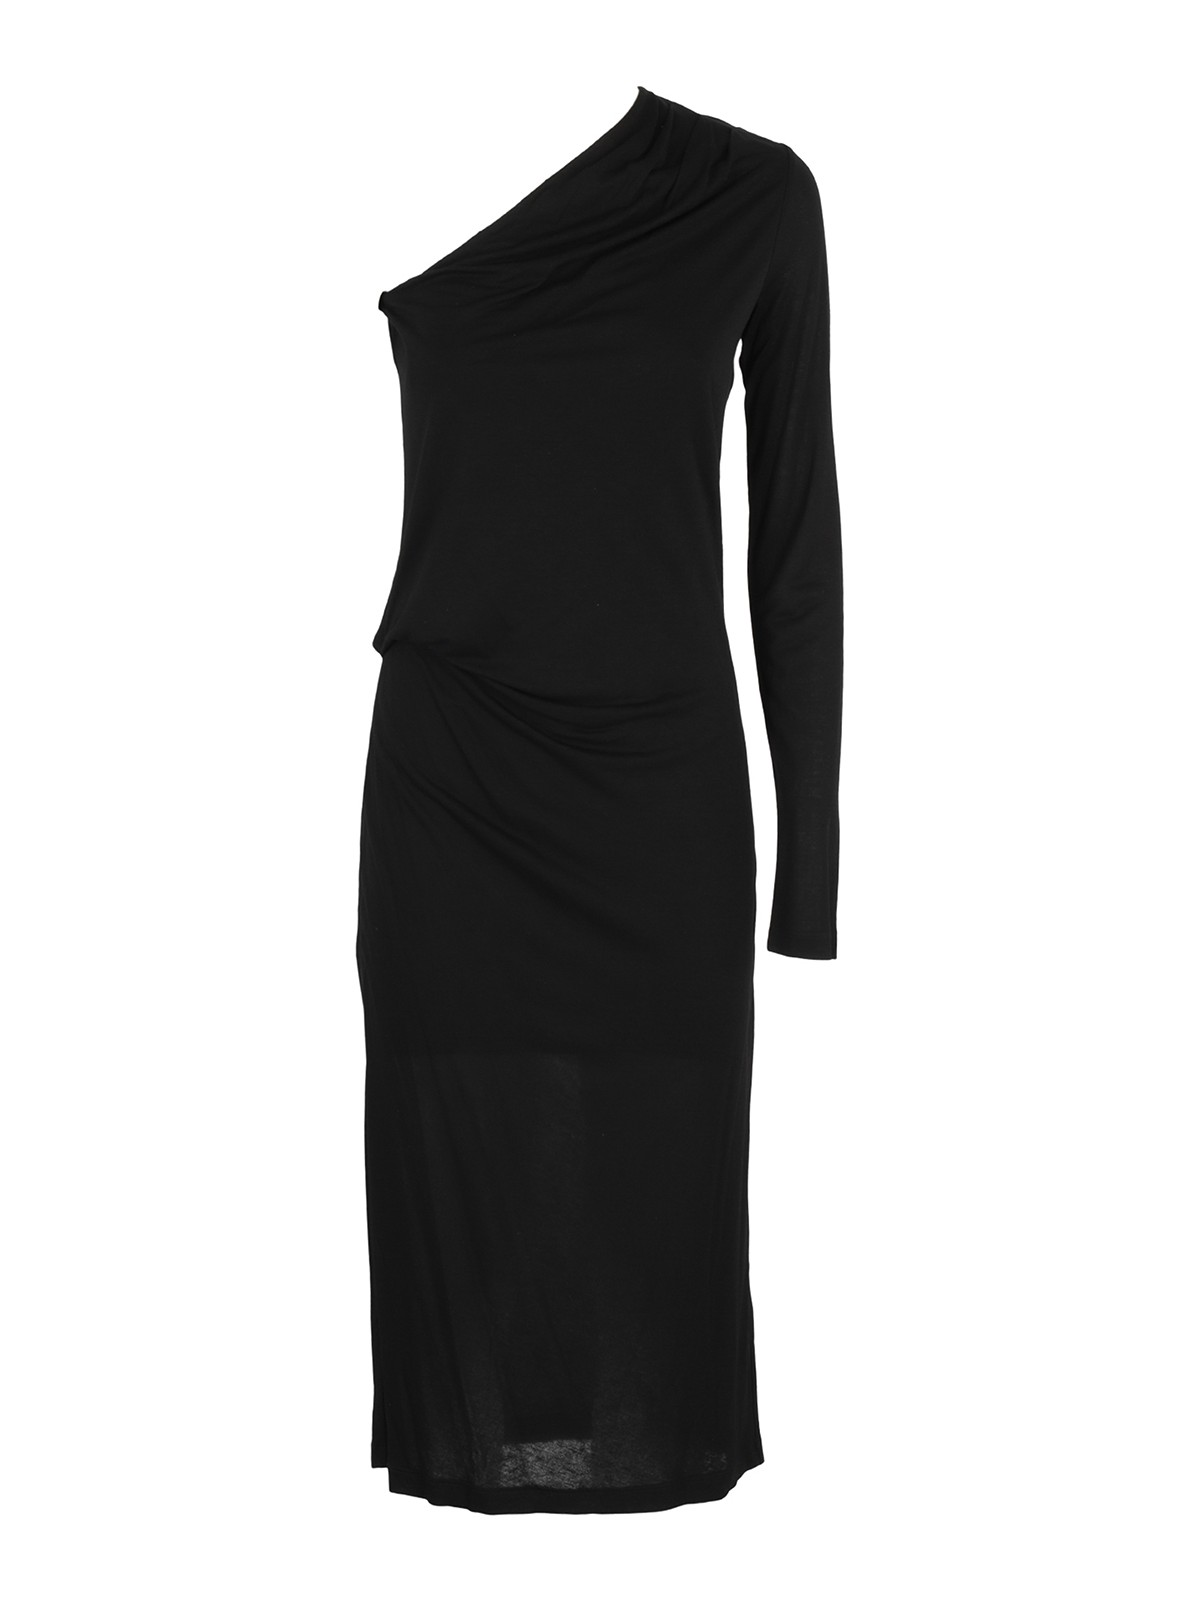 Helmut Lang Black One-shoulder Maxi Dress | ModeSens